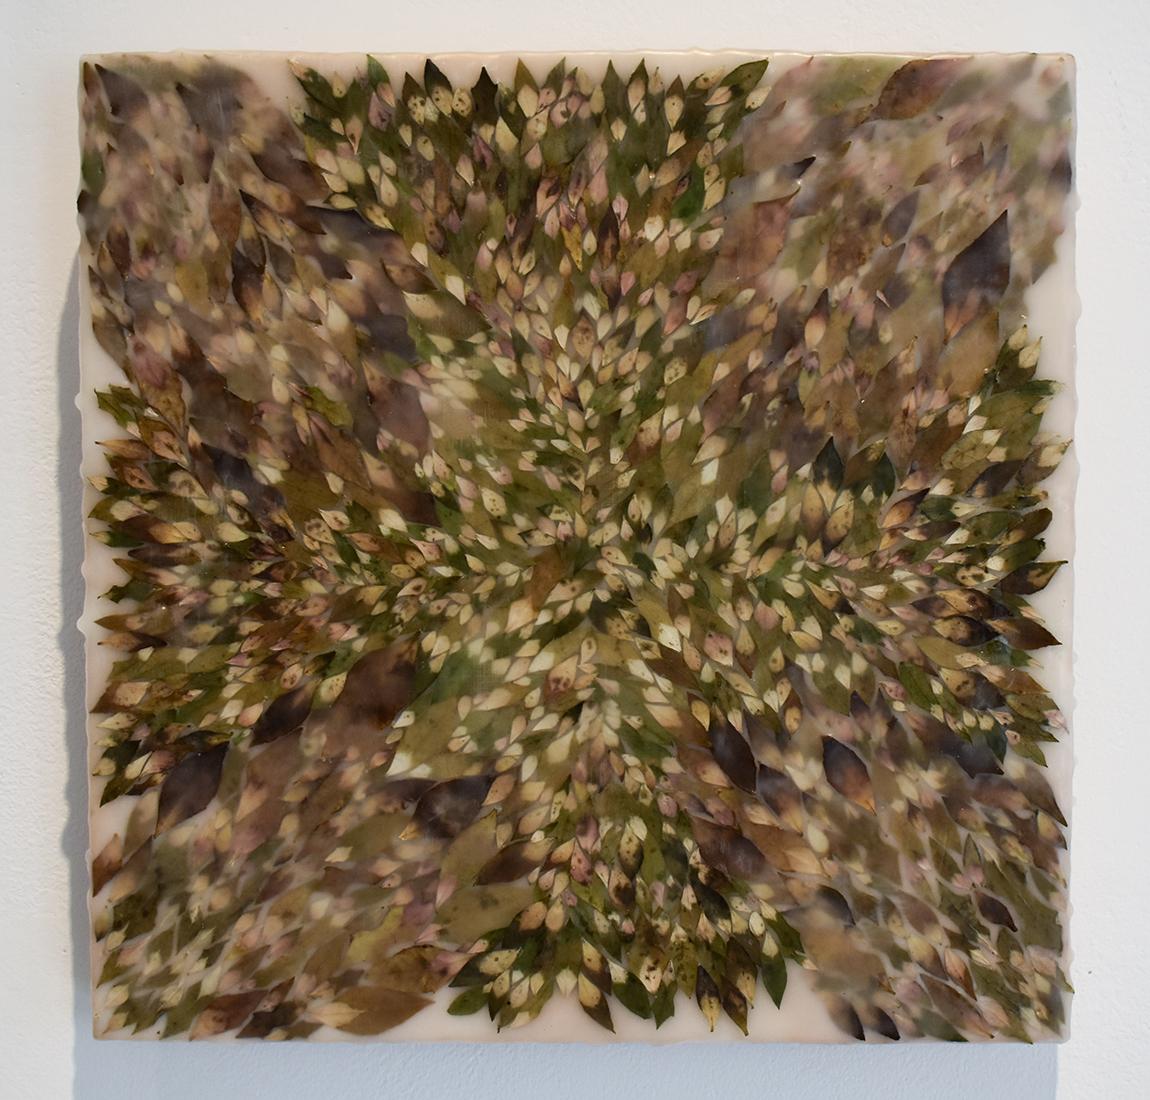 Euphorisches 9: Abstraktes Enkaustik-Gemälde mit organischem grünem gemischten Material – Painting von Allyson Levy